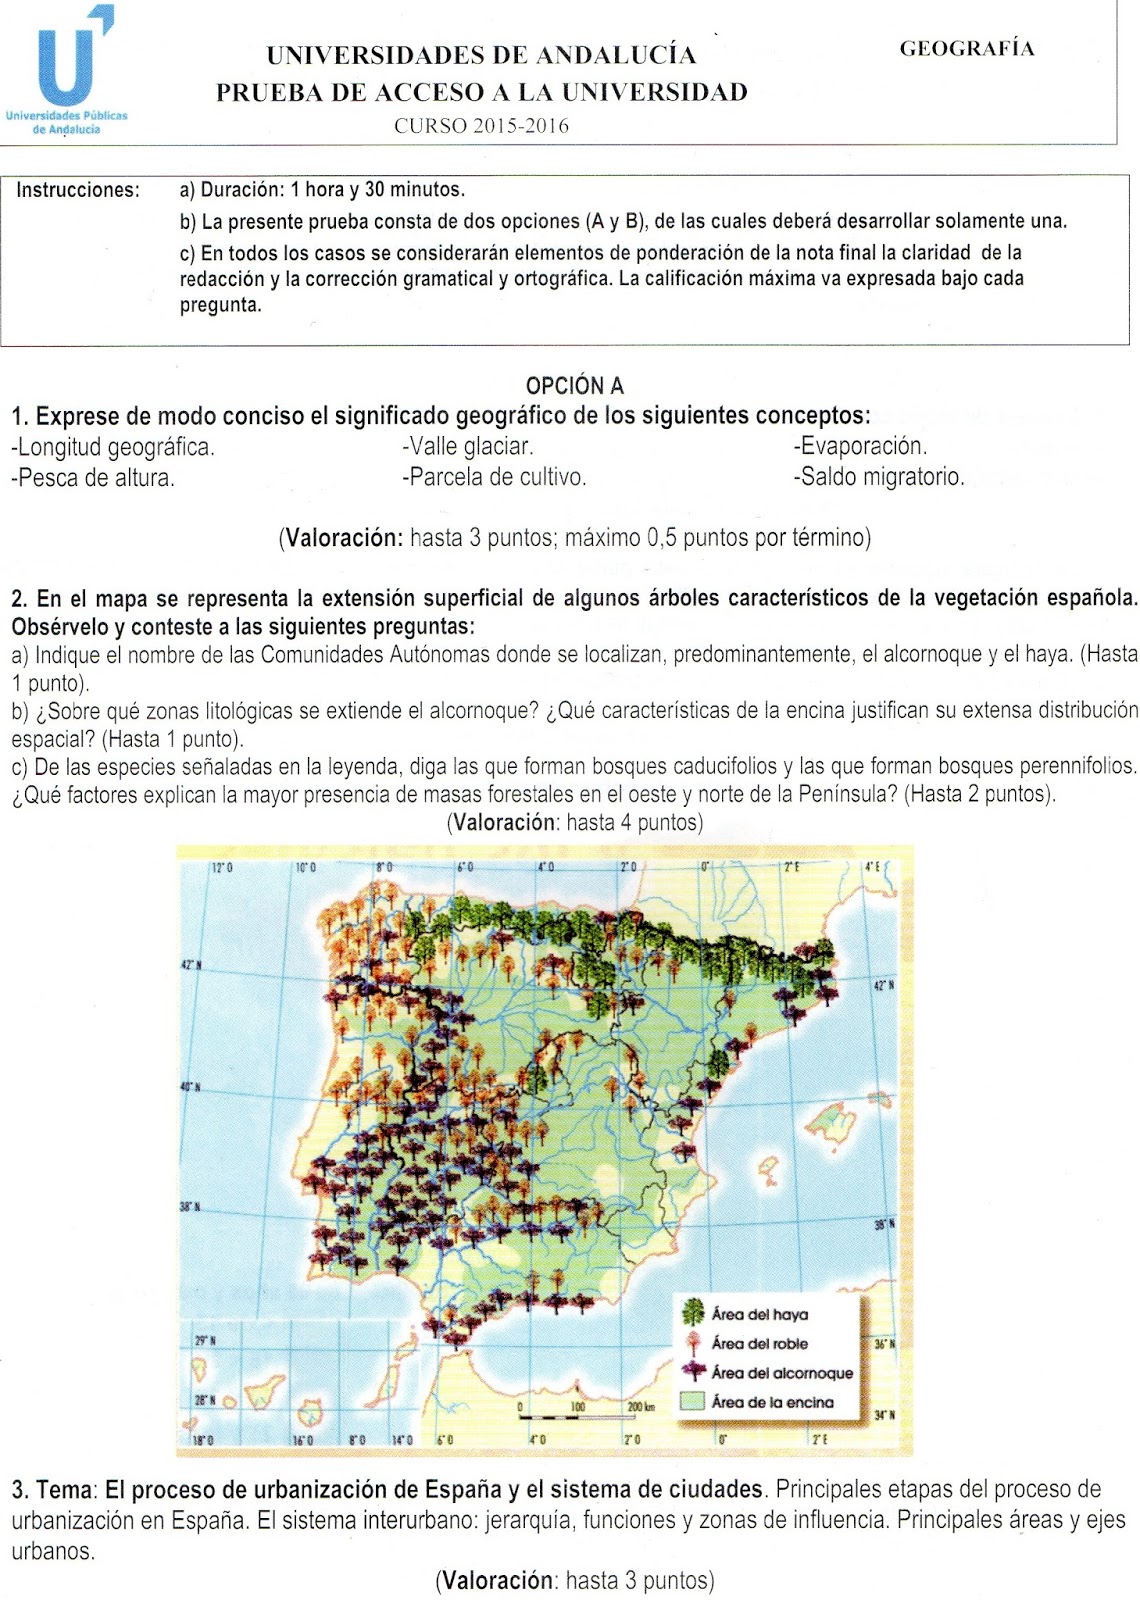 Lakoiné Historia Geografía Y Otras Ciencias Sociales Gª Examen De